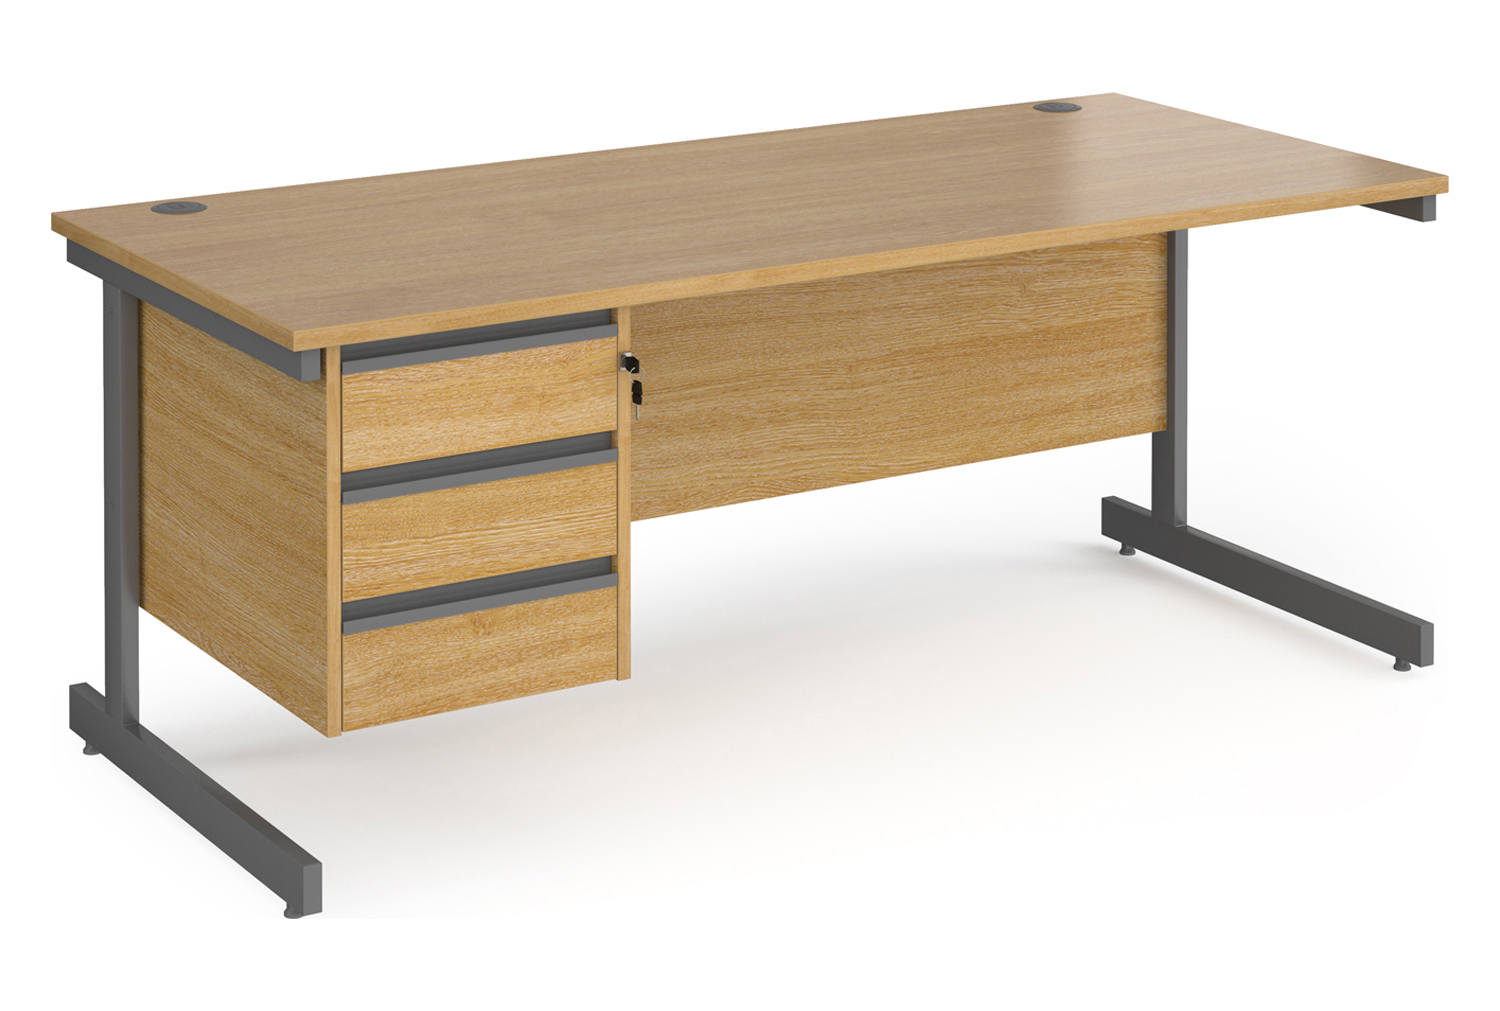 Value Line Classic+ Rectangular C-Leg Office Desk 3 Drawers (Graphite Leg), 180wx80dx73h (cm), Oak, Express Delivery